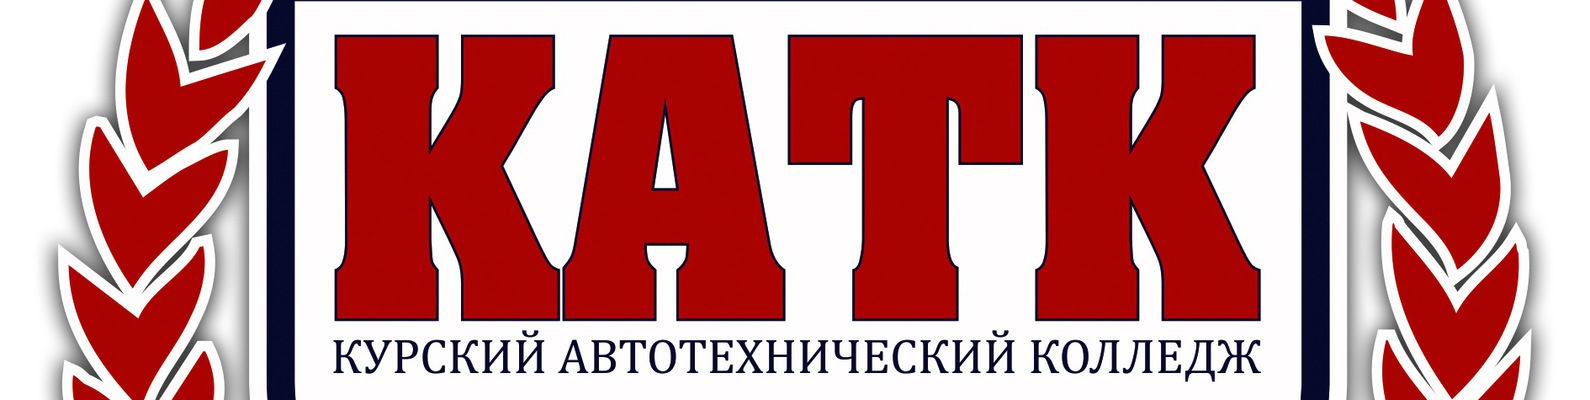 Сайт автотехнического колледжа. Курский автотехнический колледж. КАТК логотип. КАТК 46. Логотип КАТК Курск.